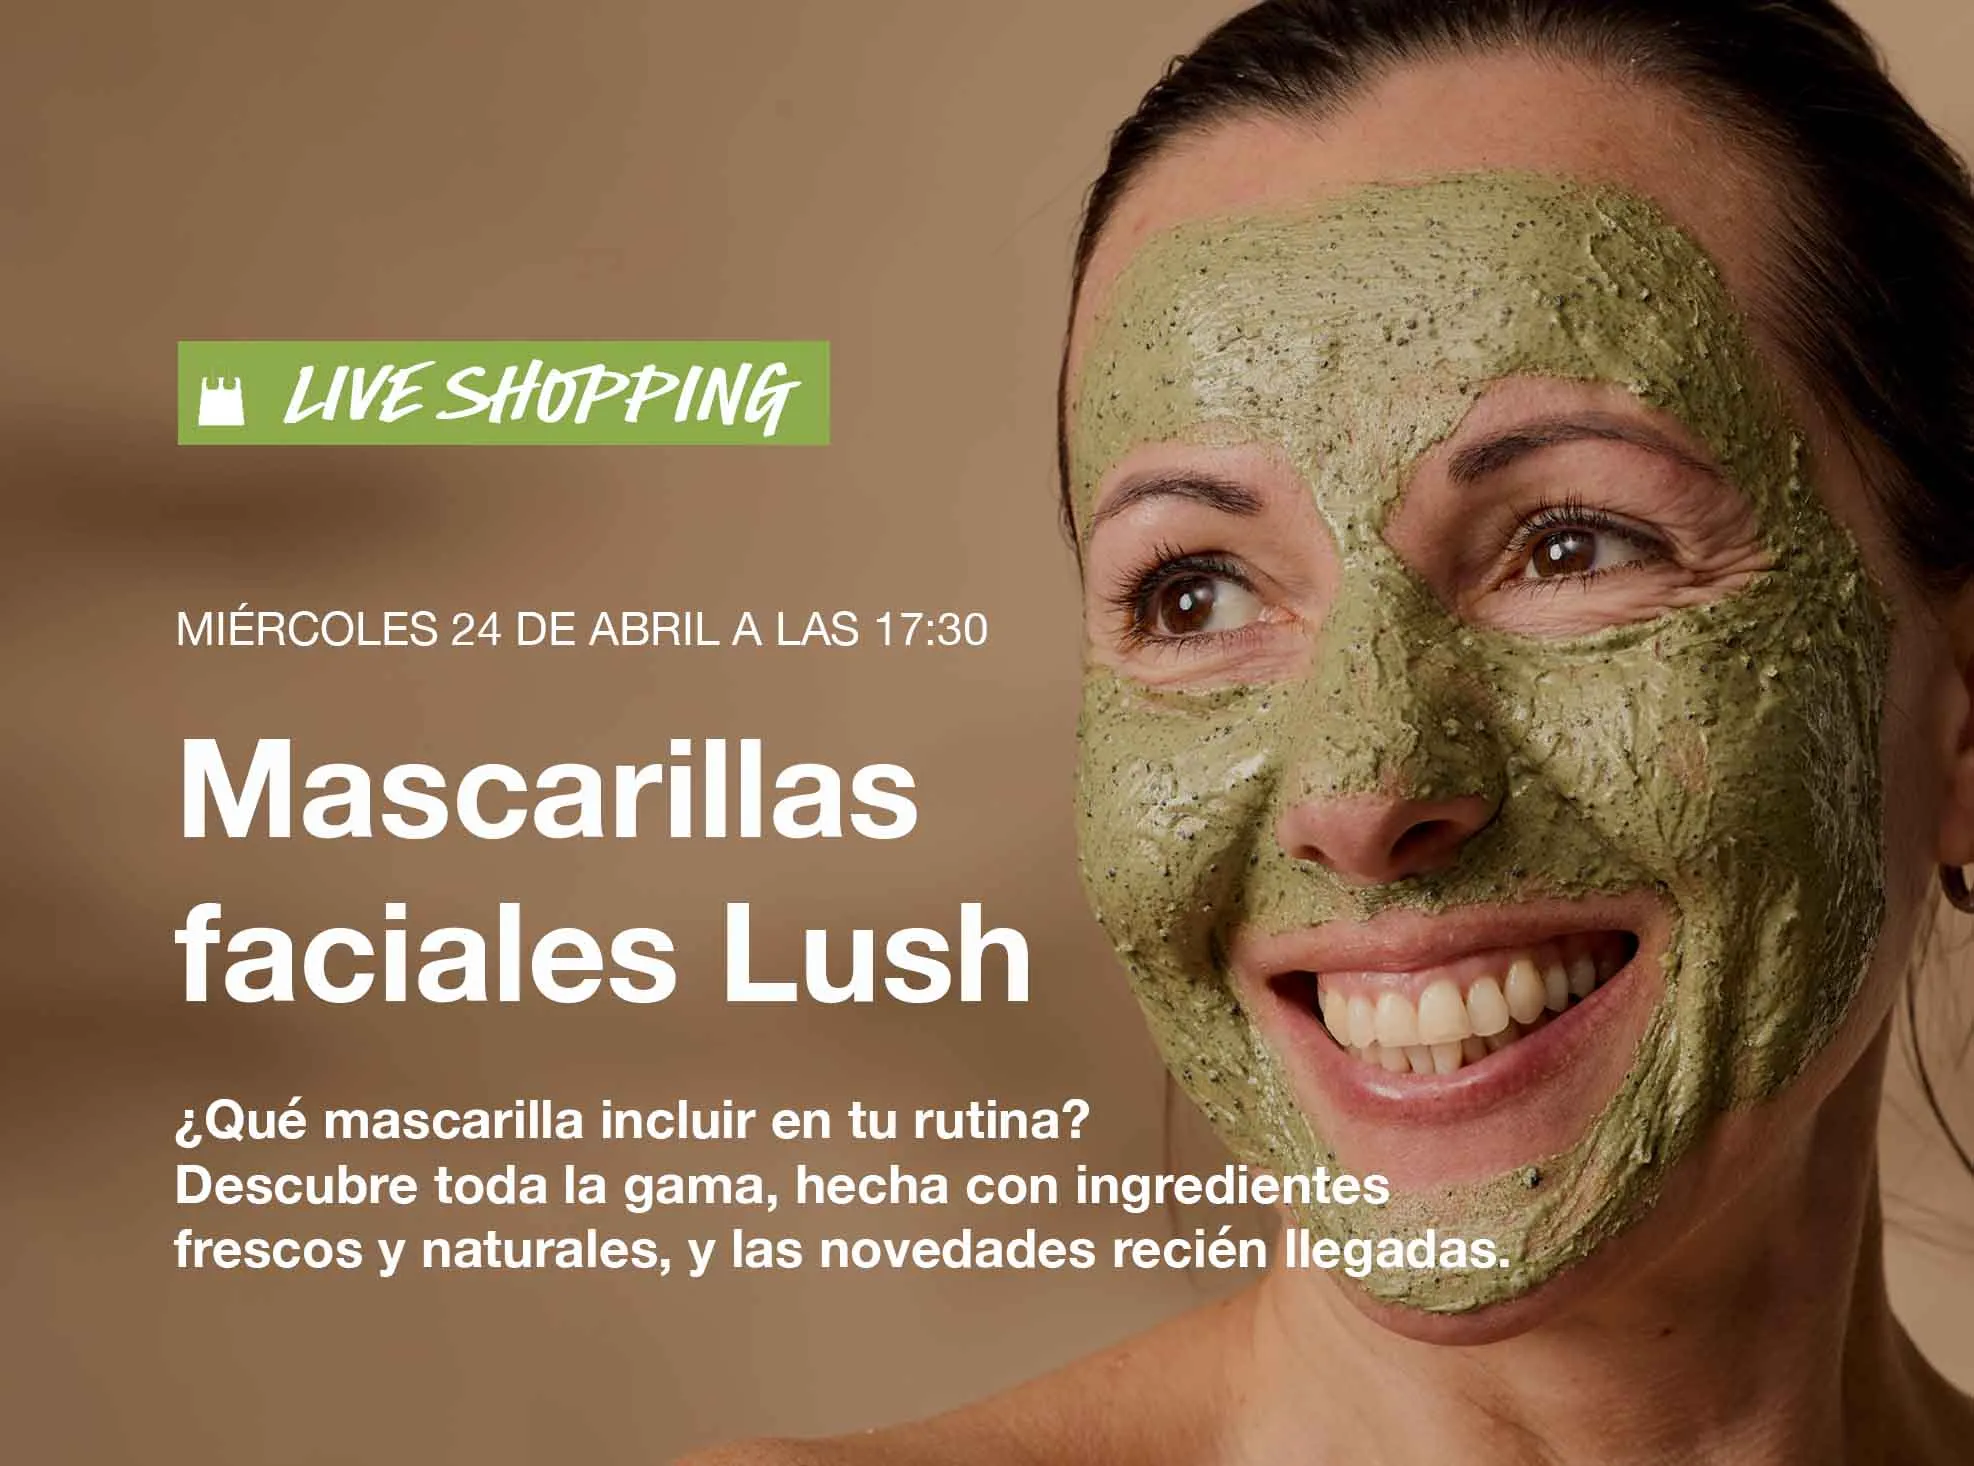 Descubre las mascarillas faciales de Lush shoppable video